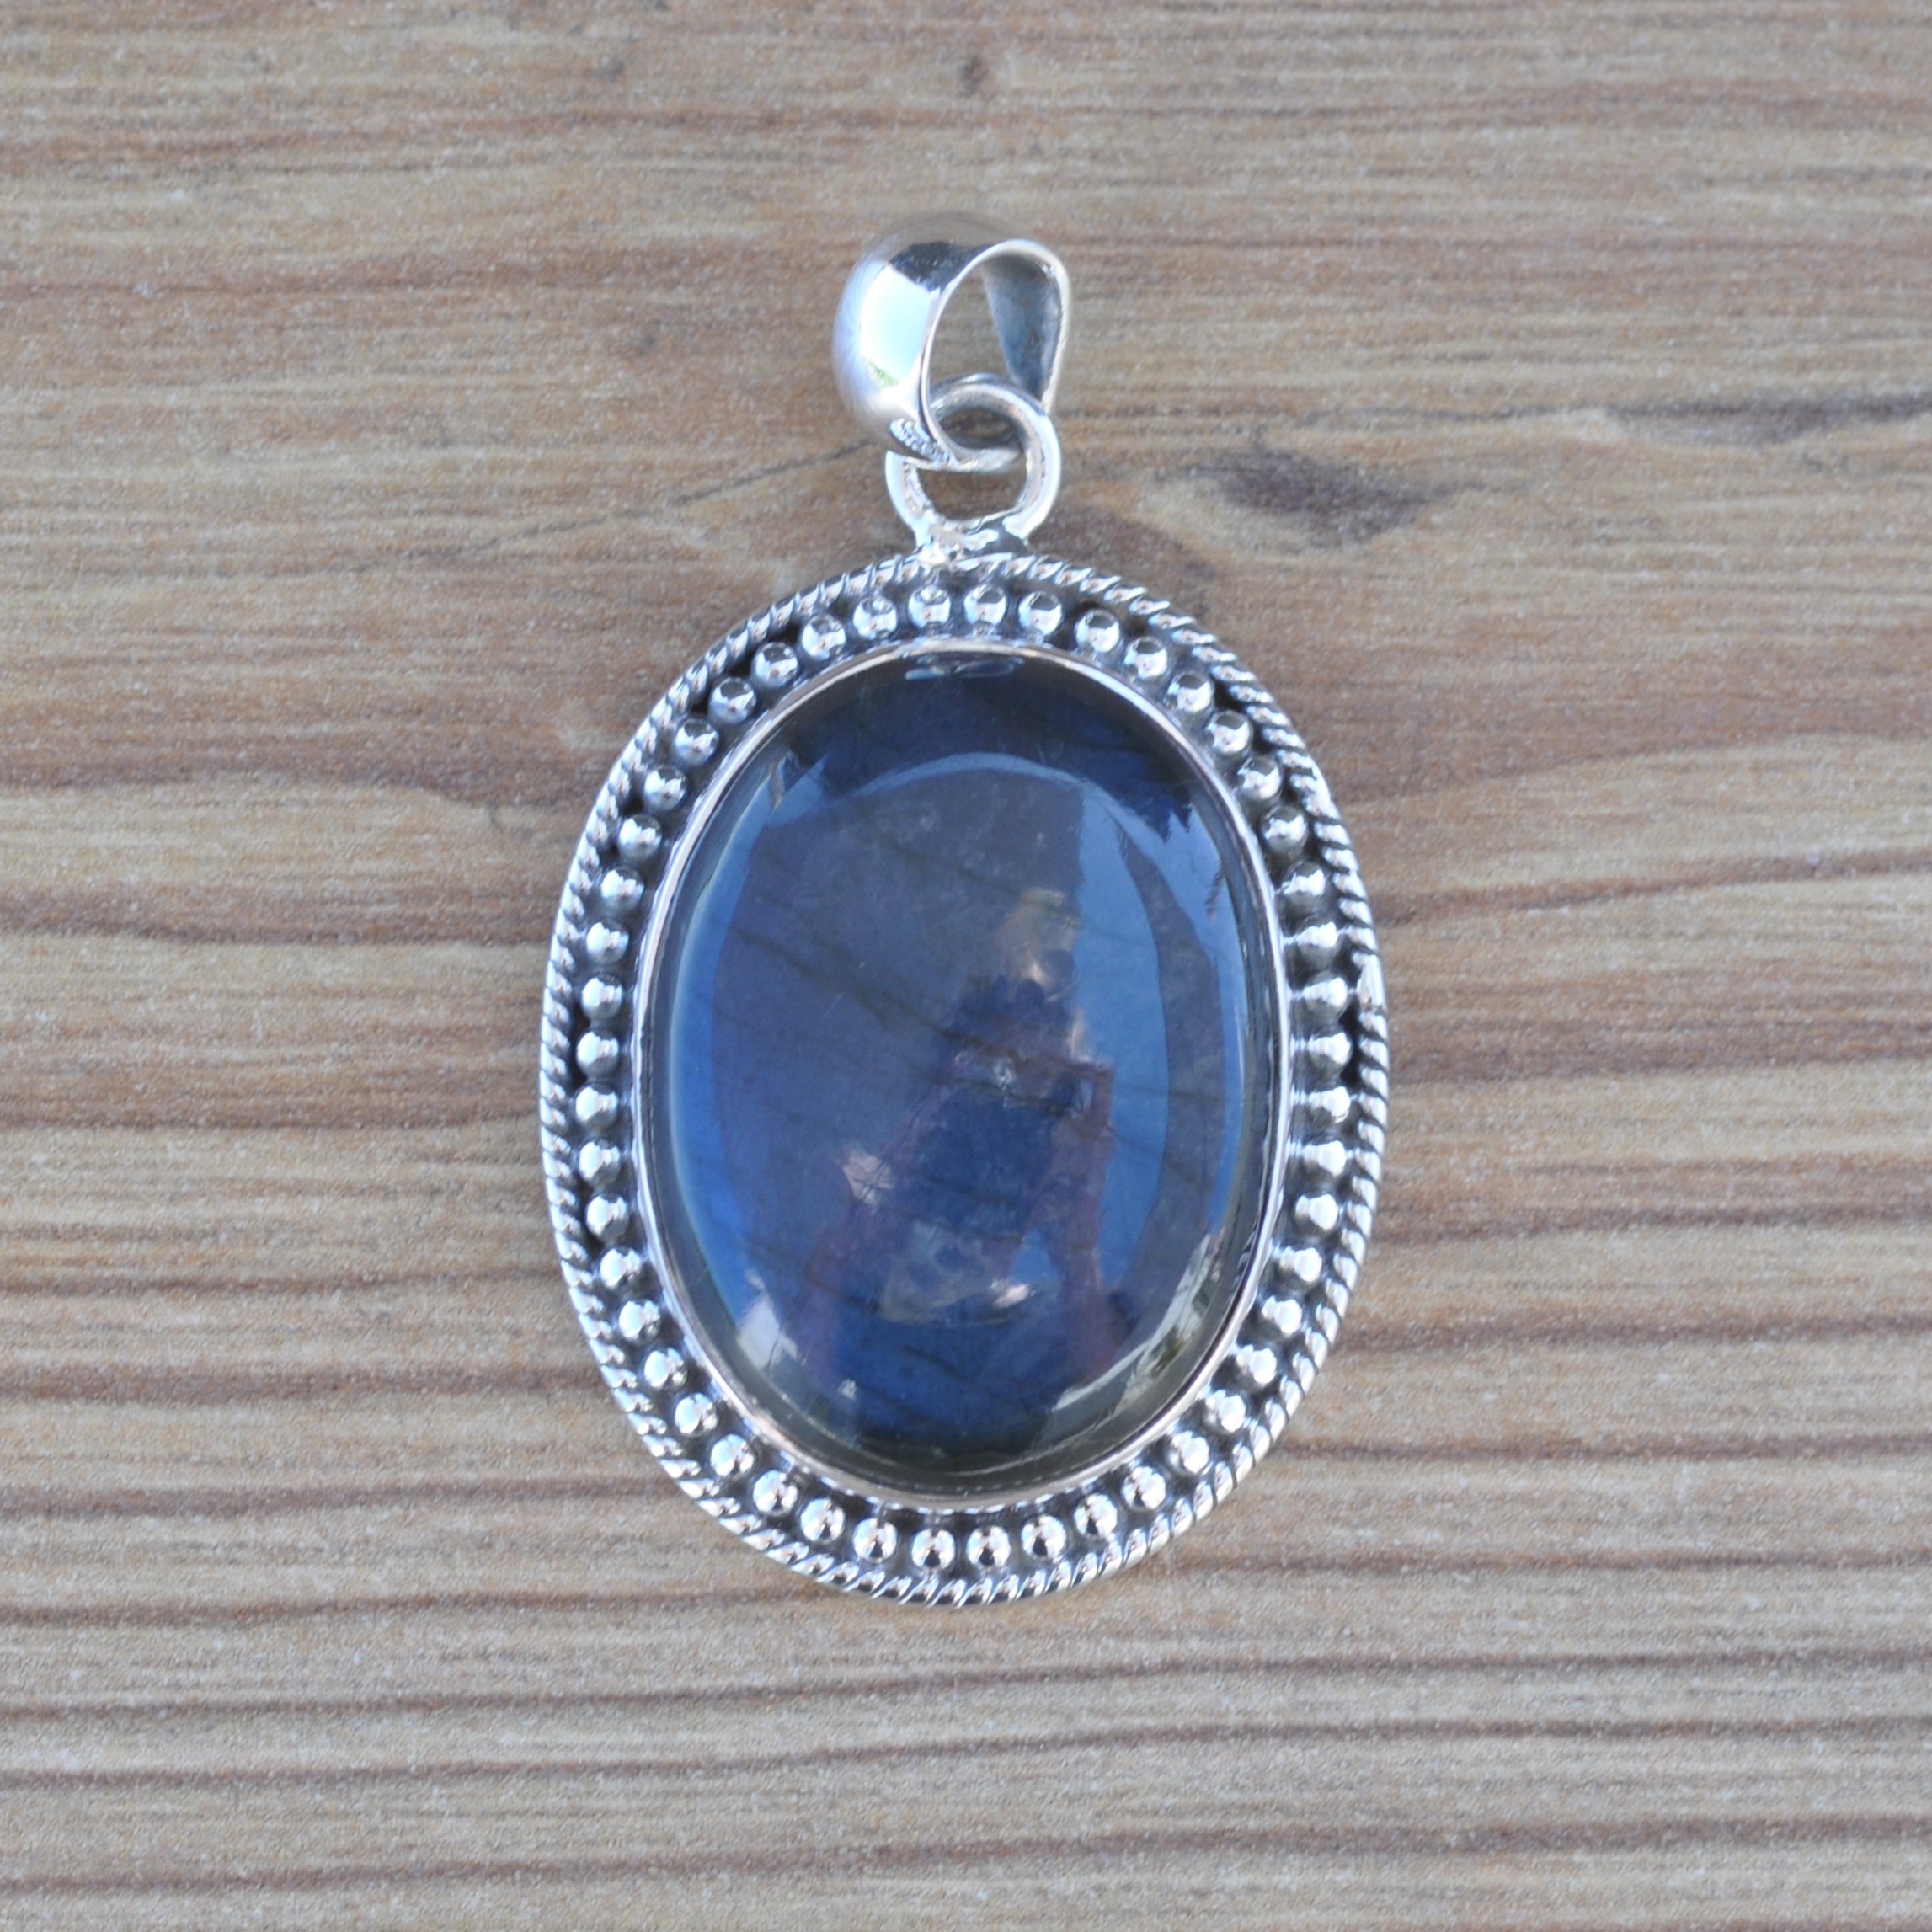 NEW ! Pendentif ovale argent ciselé et pierre Labradorite (bleu)